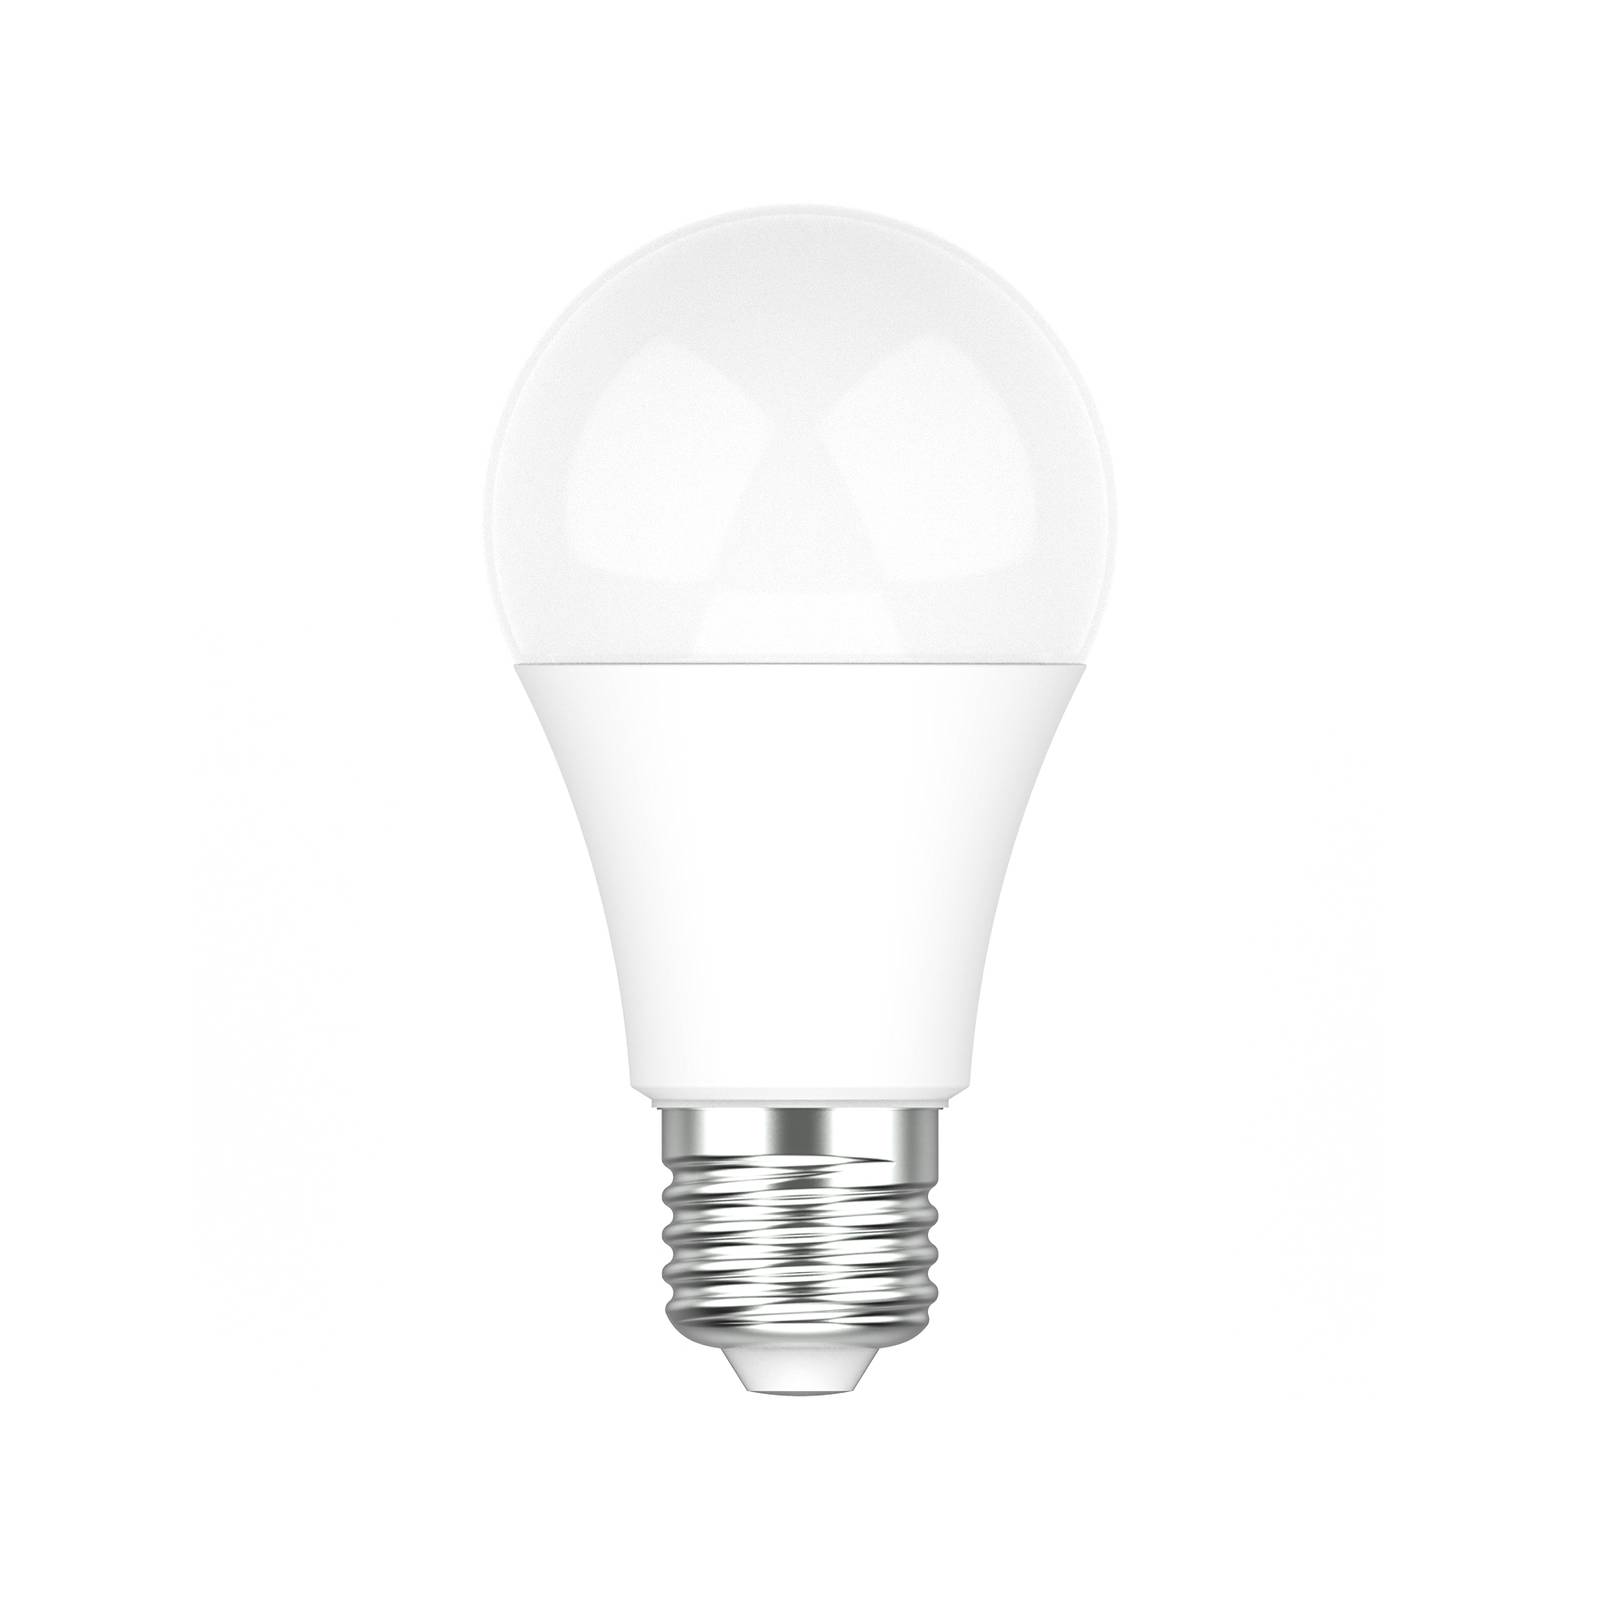 Image of PRIOS Smart LED E27 9 W tunable white WLAN RVB Tuya 4251911747515